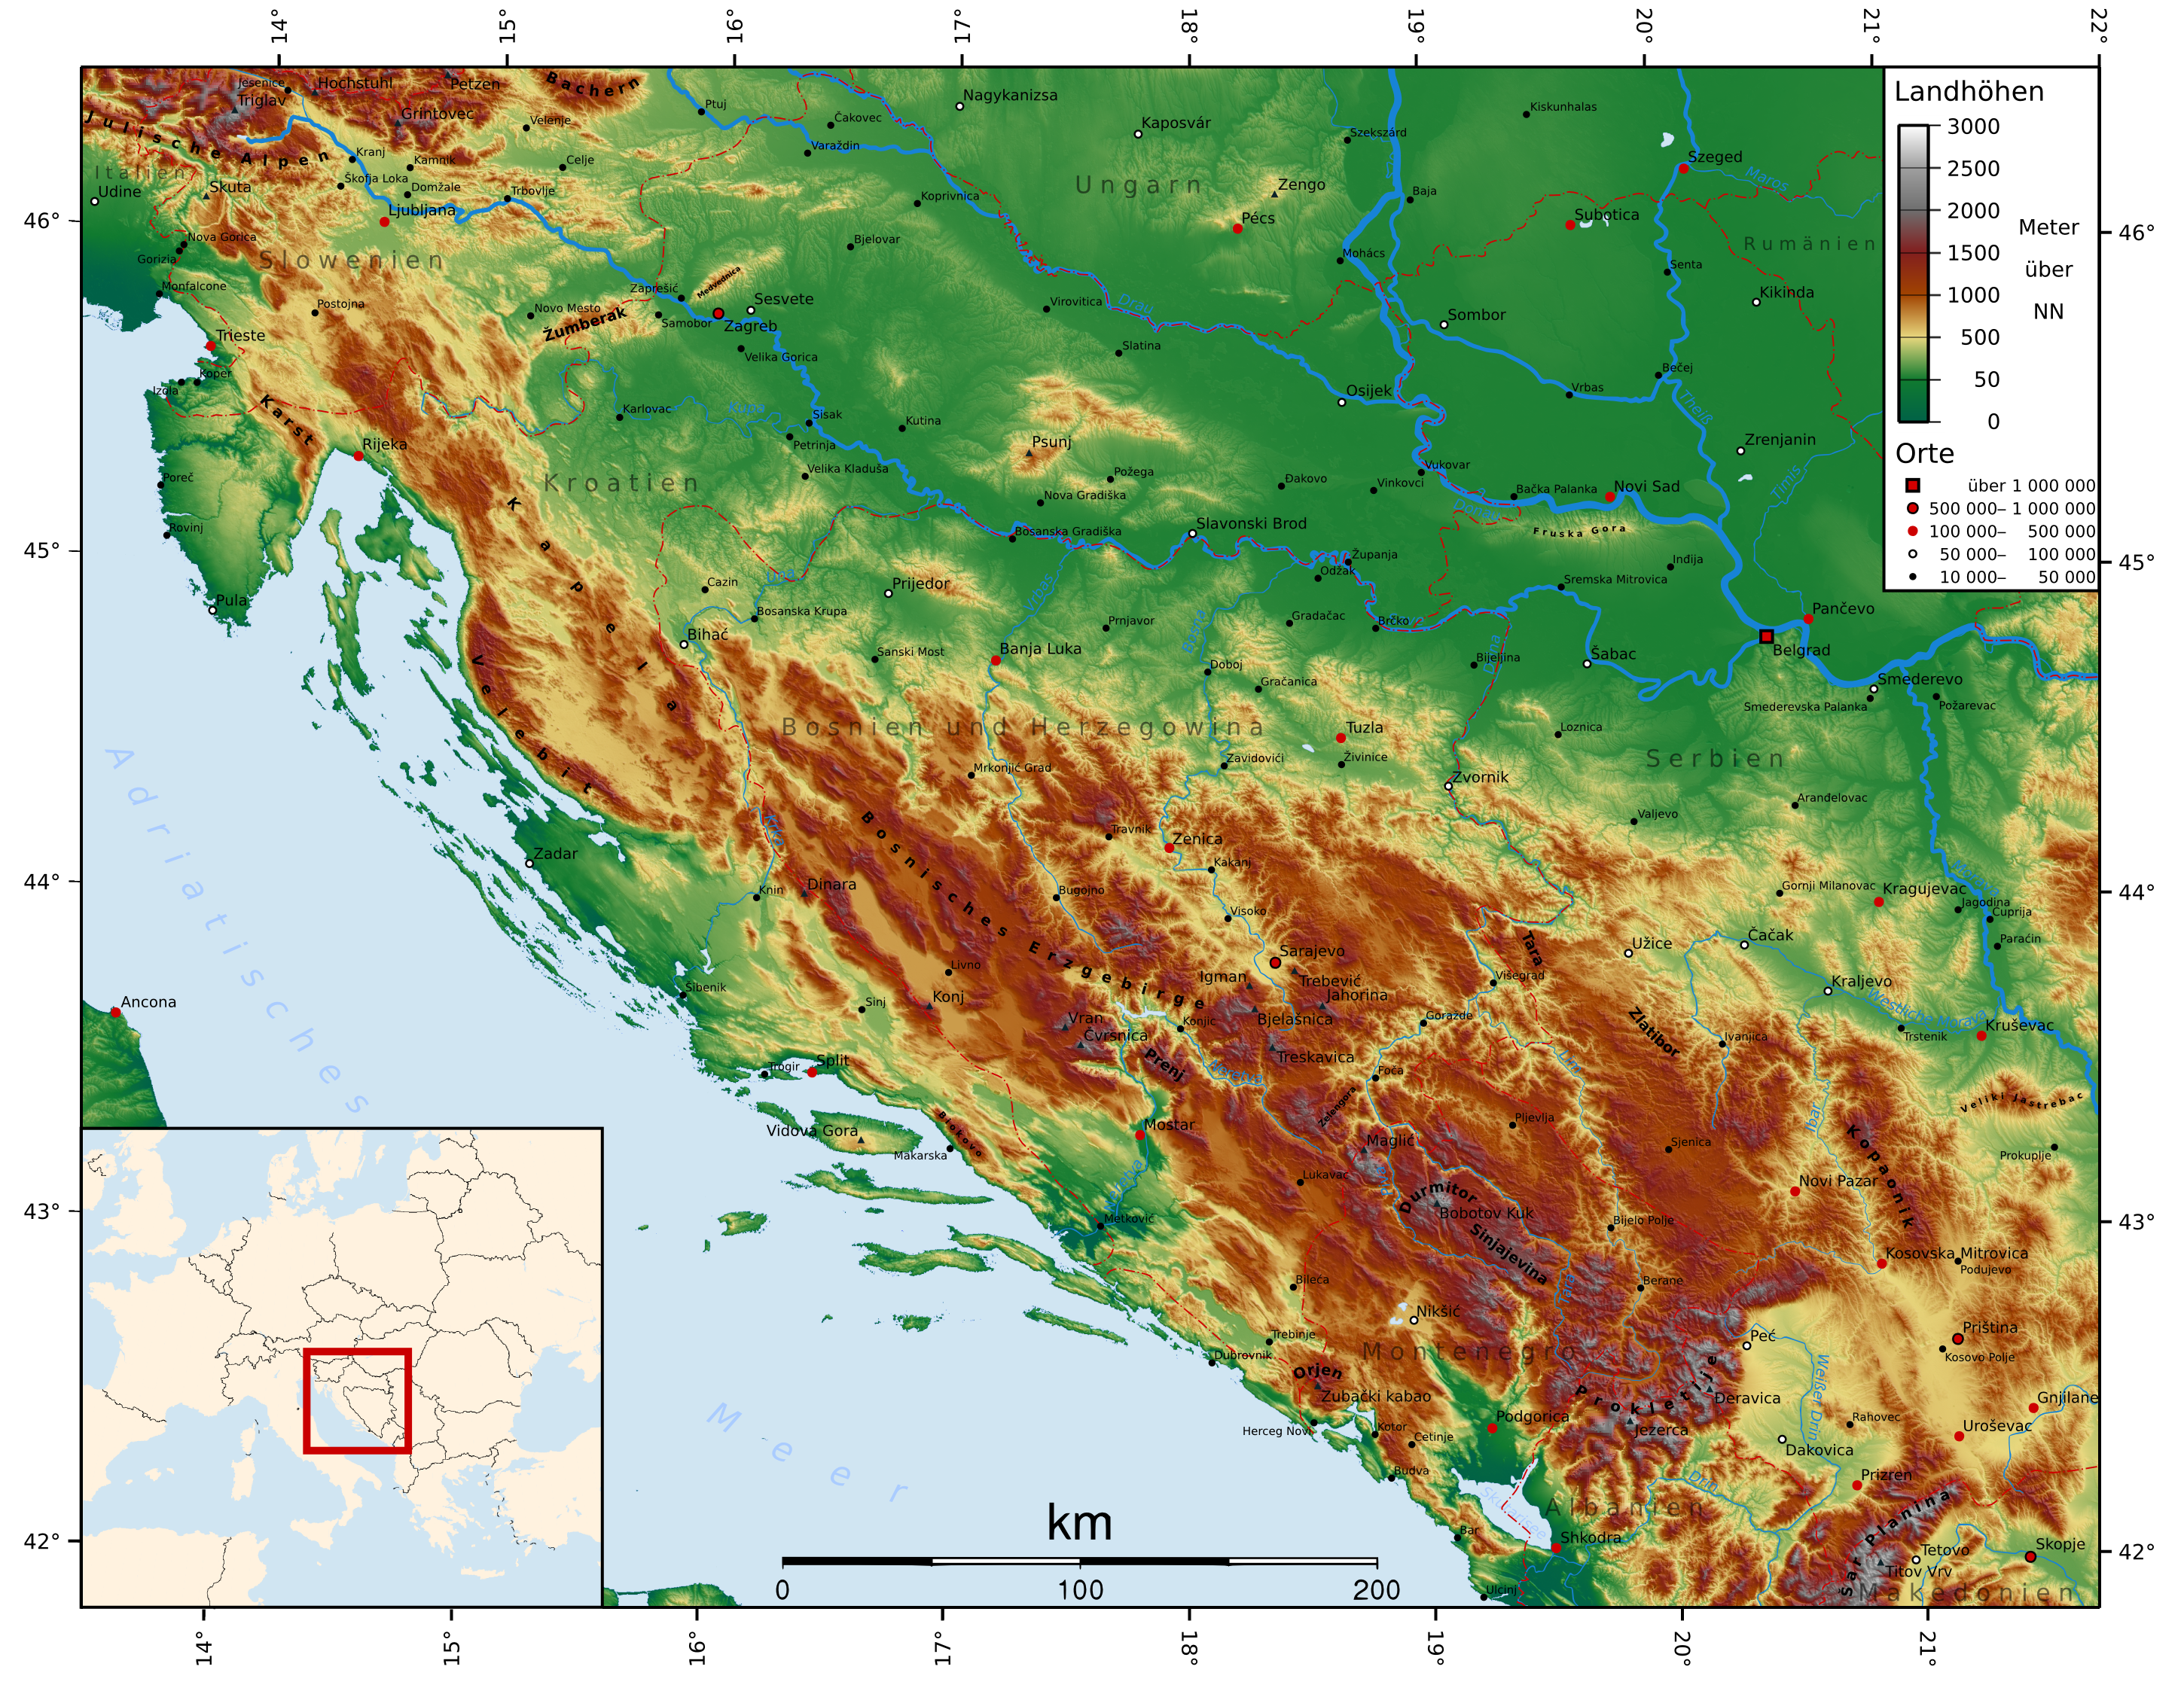 Карта Черногории